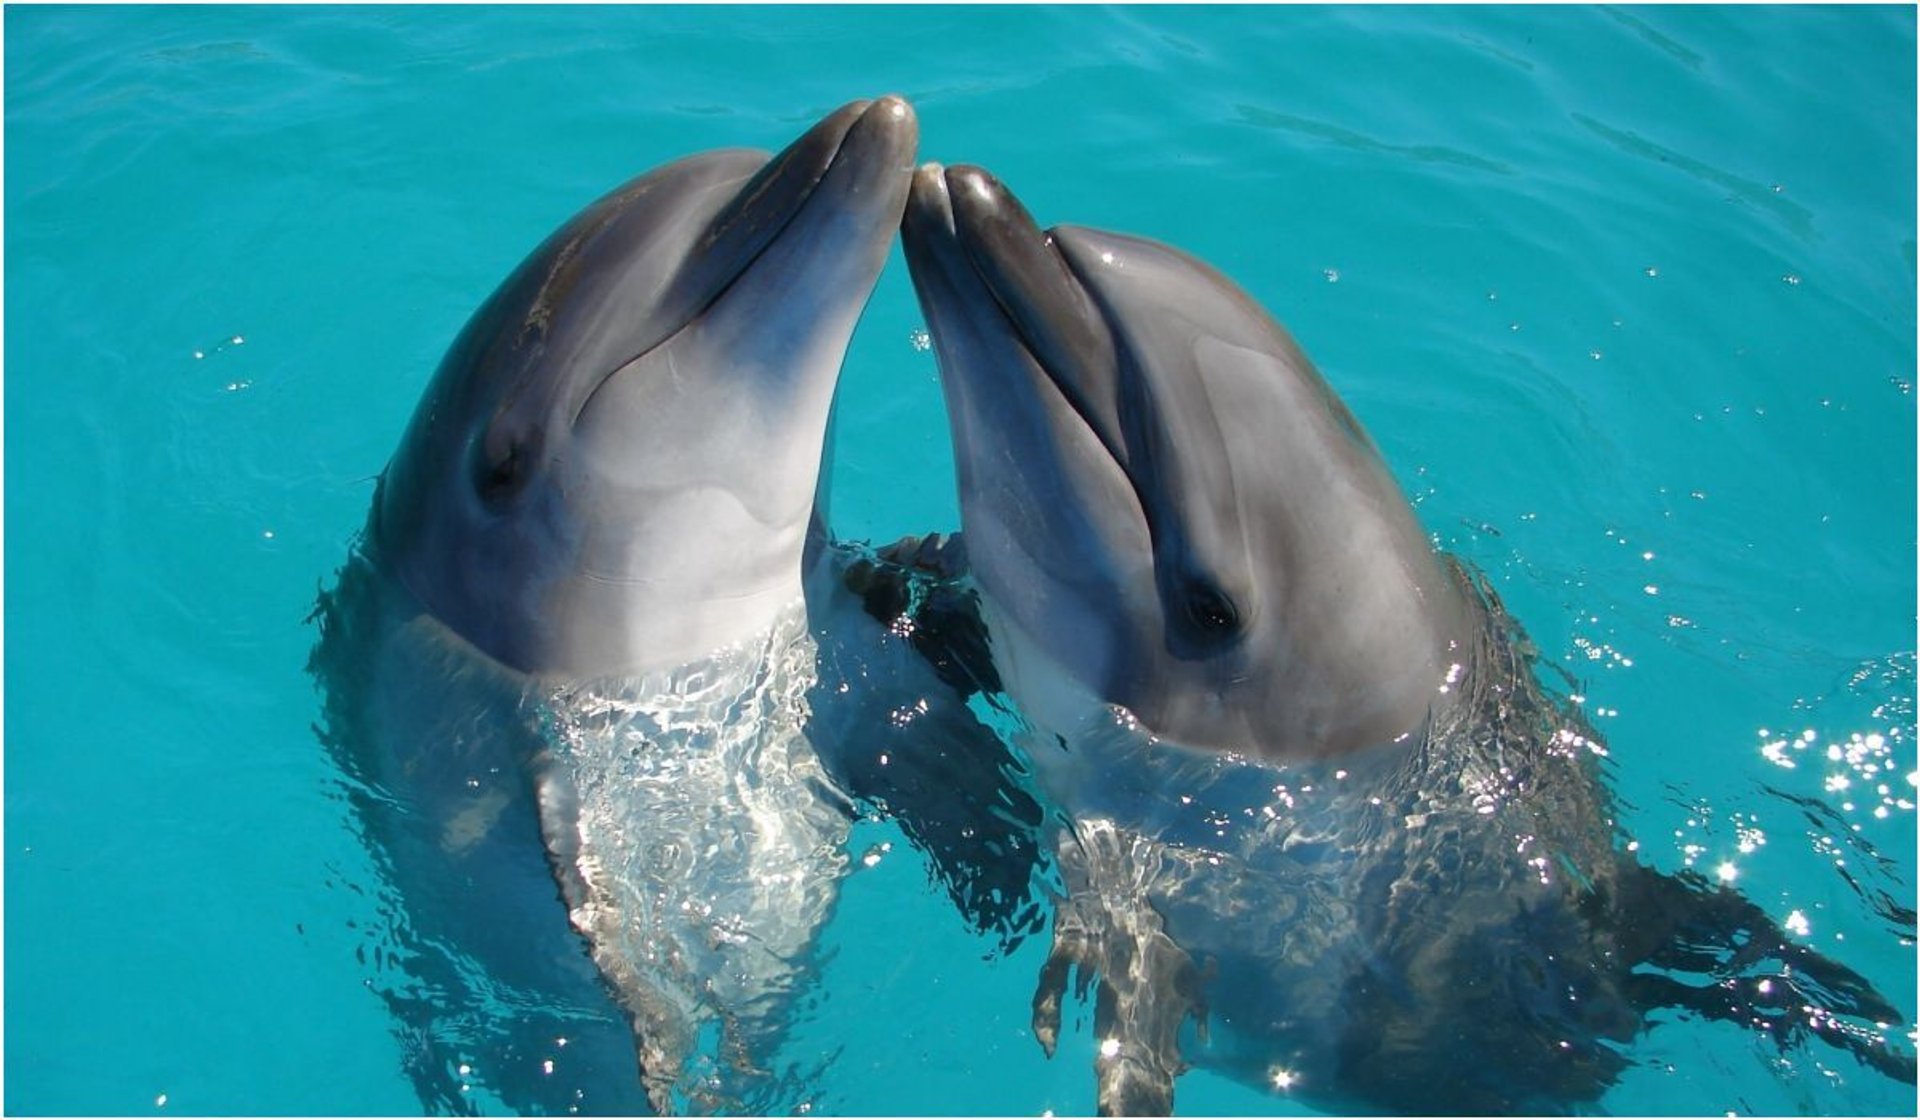 Japońskie władze apelują, by nie zbliżać się do delfinów i ich nie dotykać